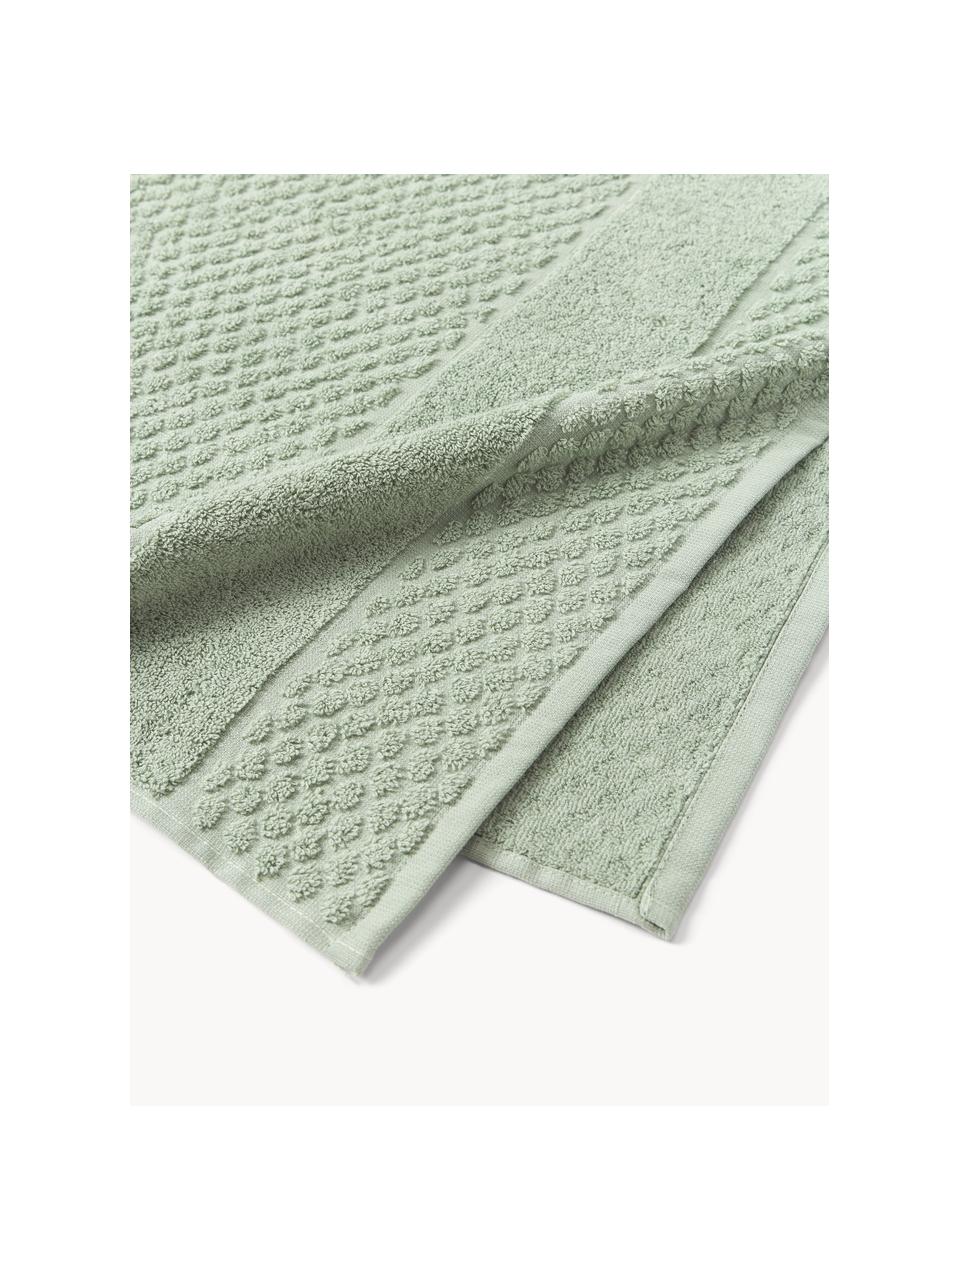 Set de toallas Katharina, tamaños diferentes, Verde salvia, Set de 3 (toalla tocador, toalla lavabo y toalla ducha)